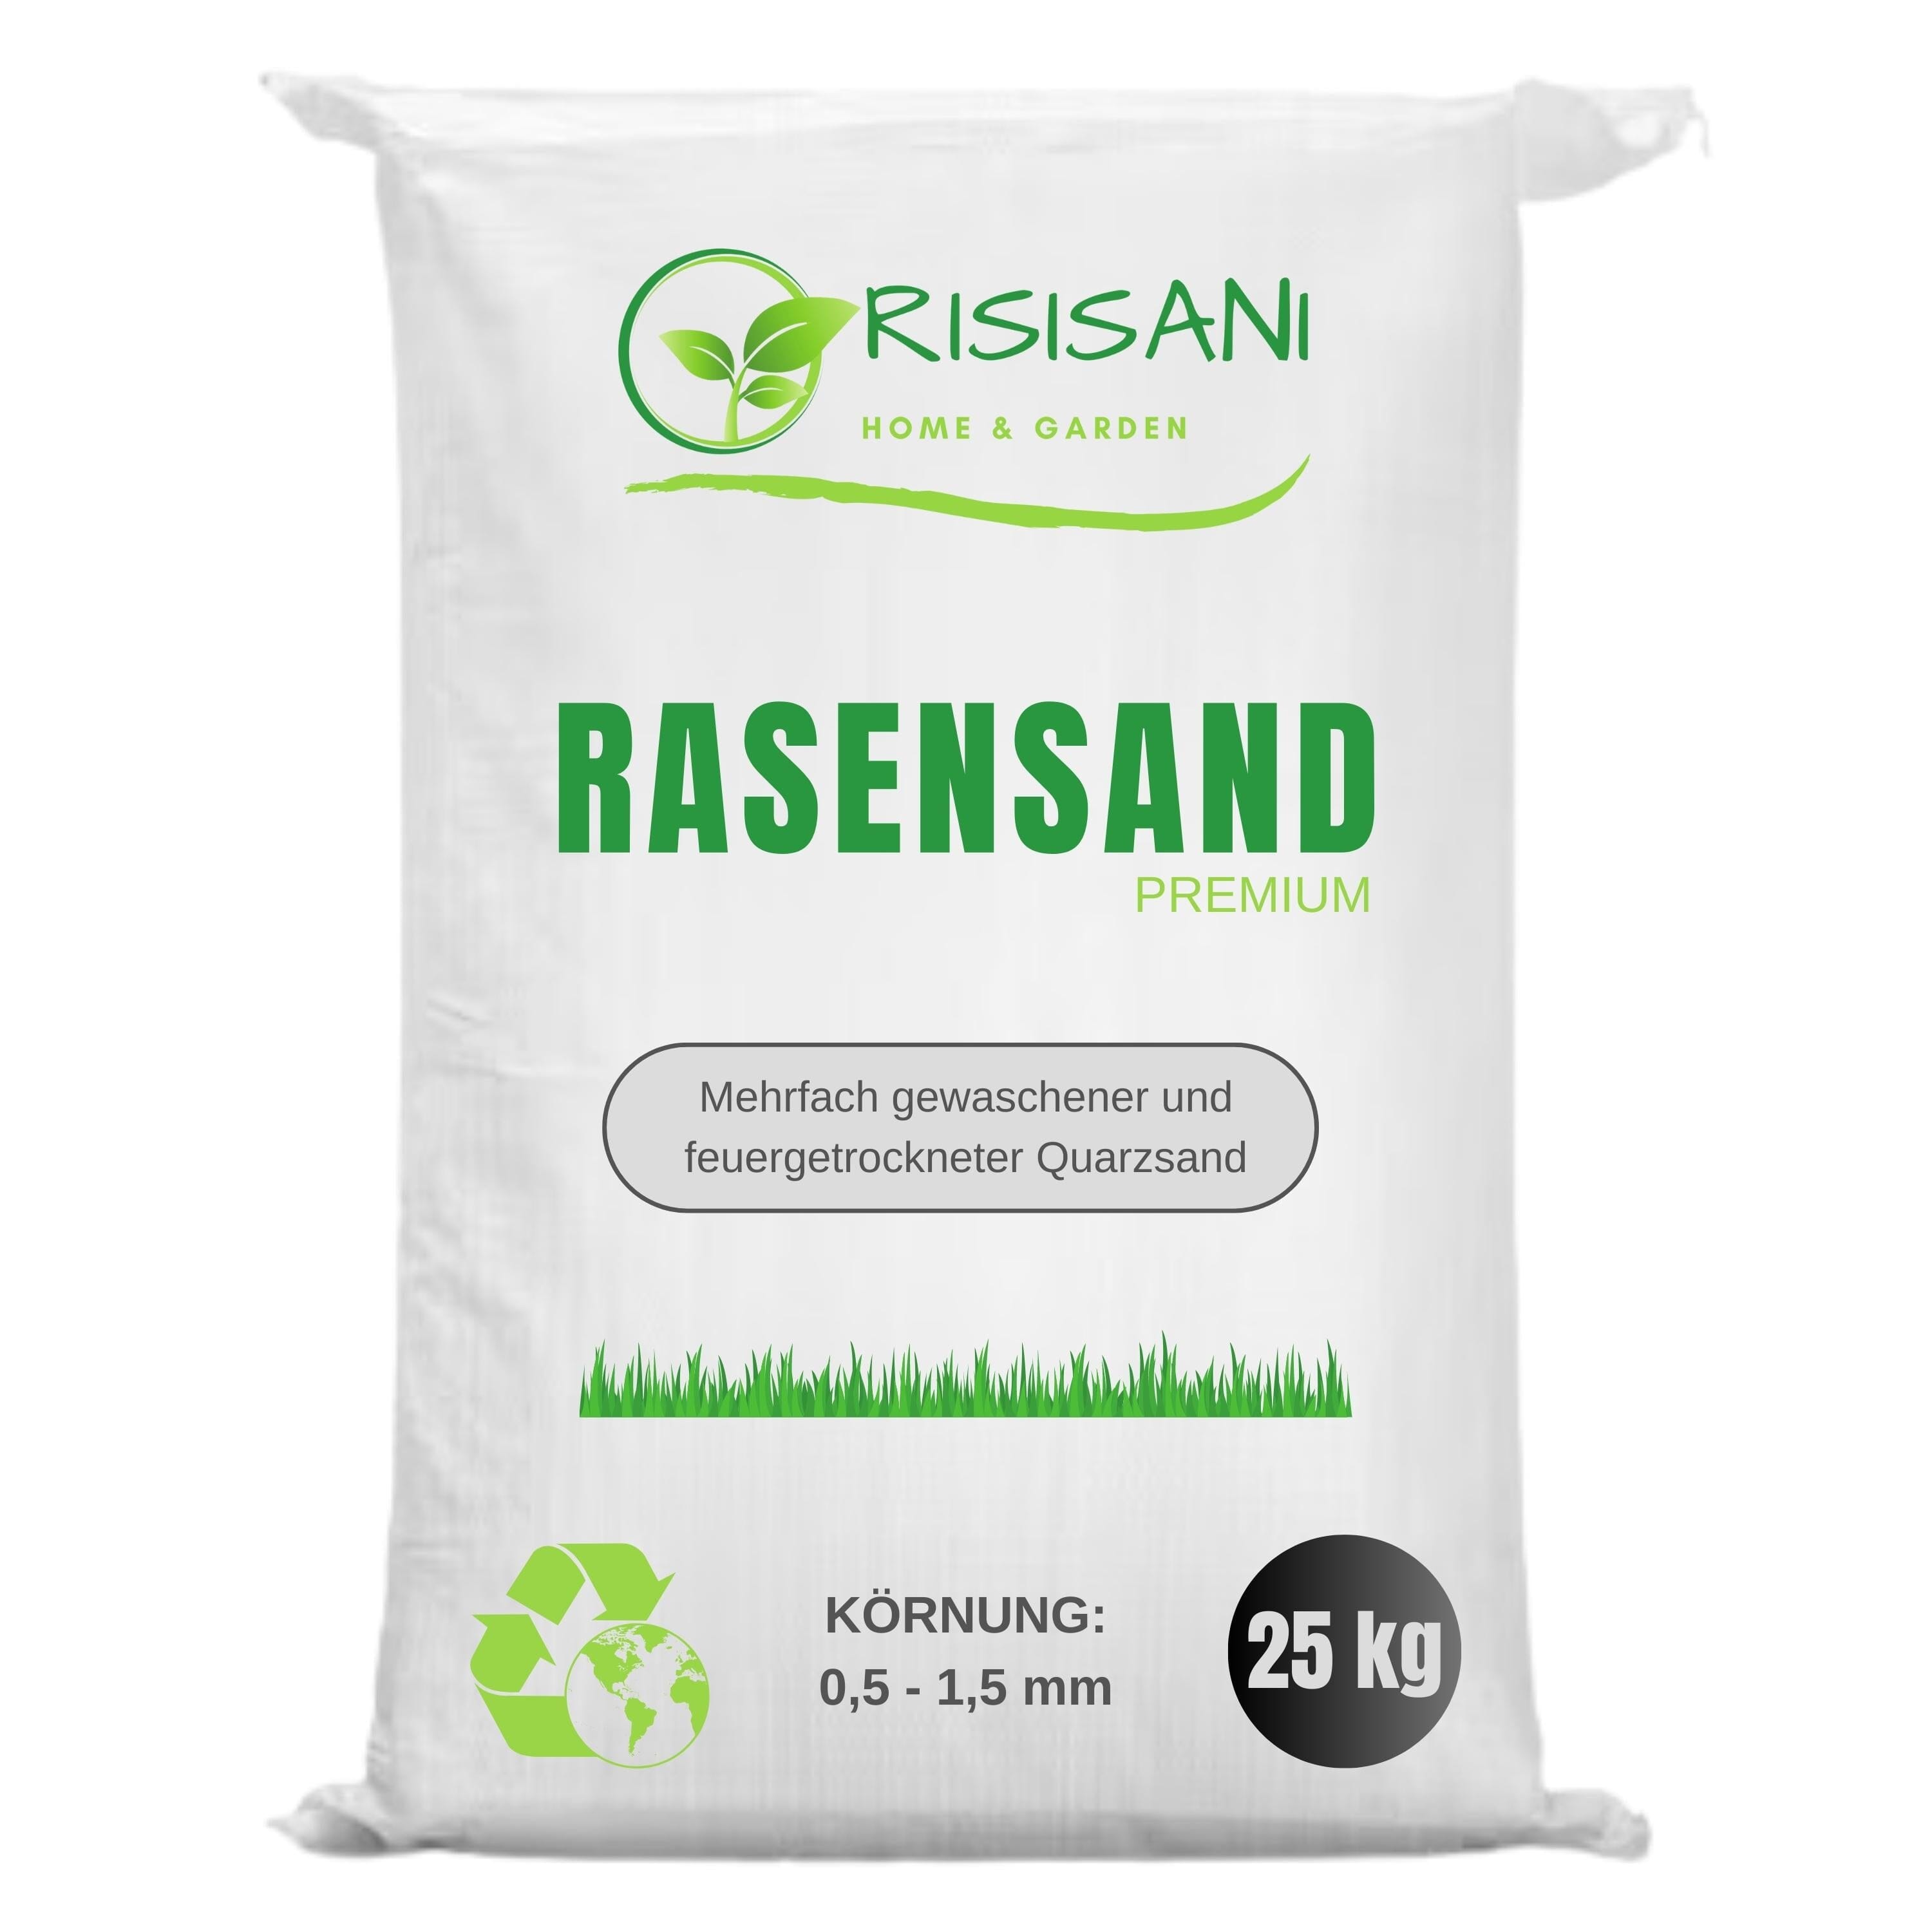 Rasensand Premium 0,5-1,5 mm | 25 kg | Quarzsand gewaschen und feuergetrocknet RISISANI Home & Garden DE